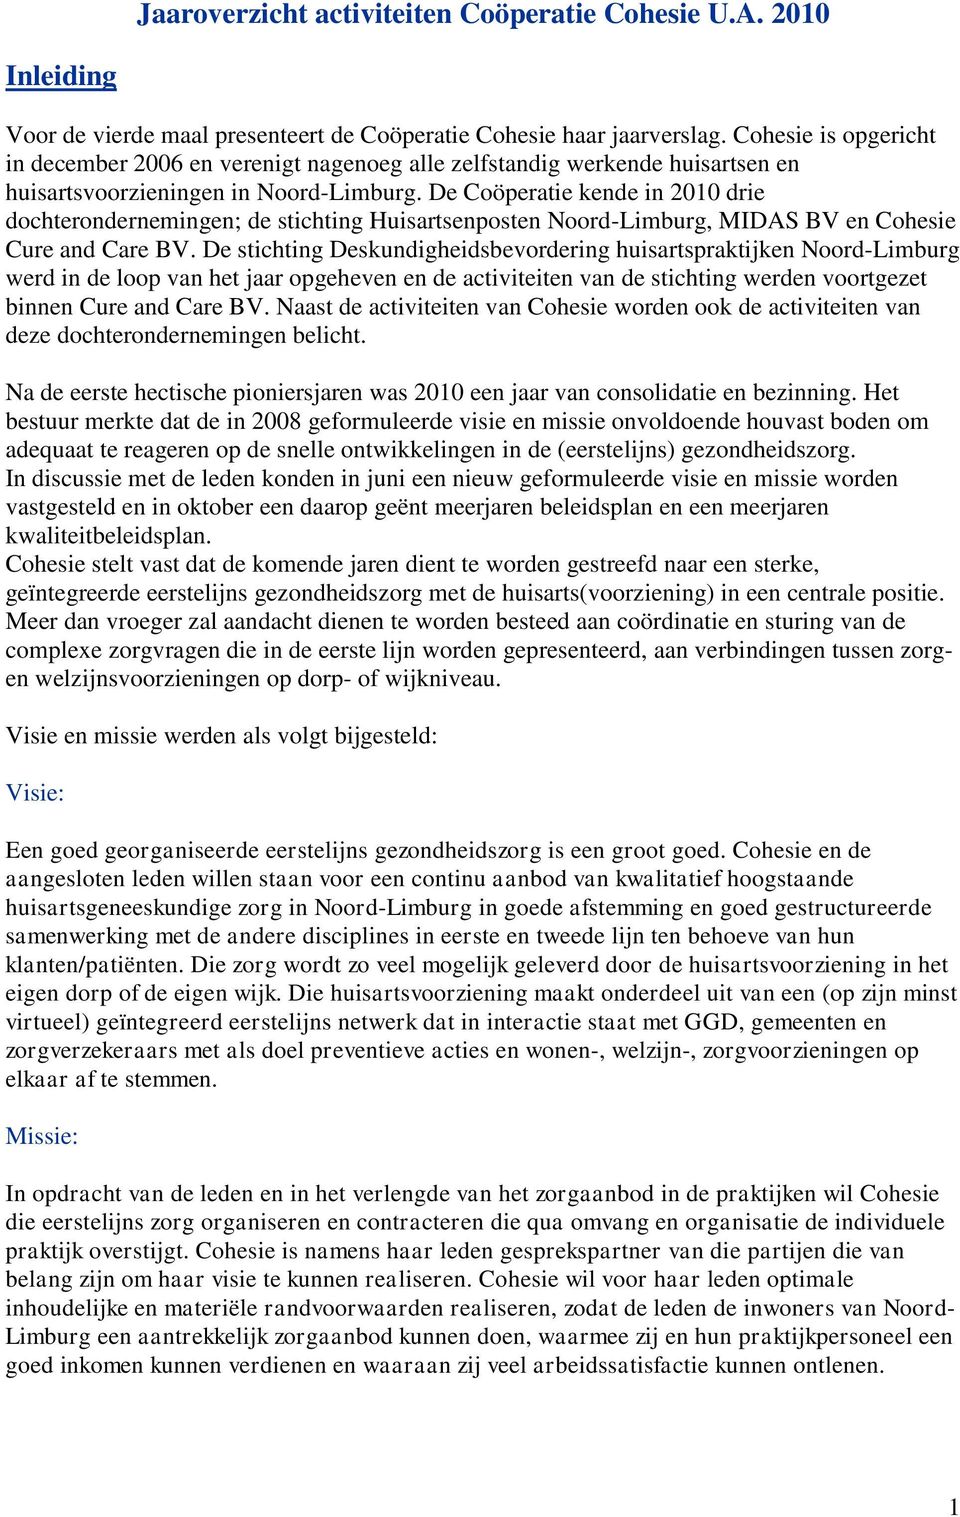 De Coöperatie kende in 2010 drie dochterondernemingen; de stichting Huisartsenposten Noord-Limburg, MIDAS BV en Cohesie Cure and Care BV.